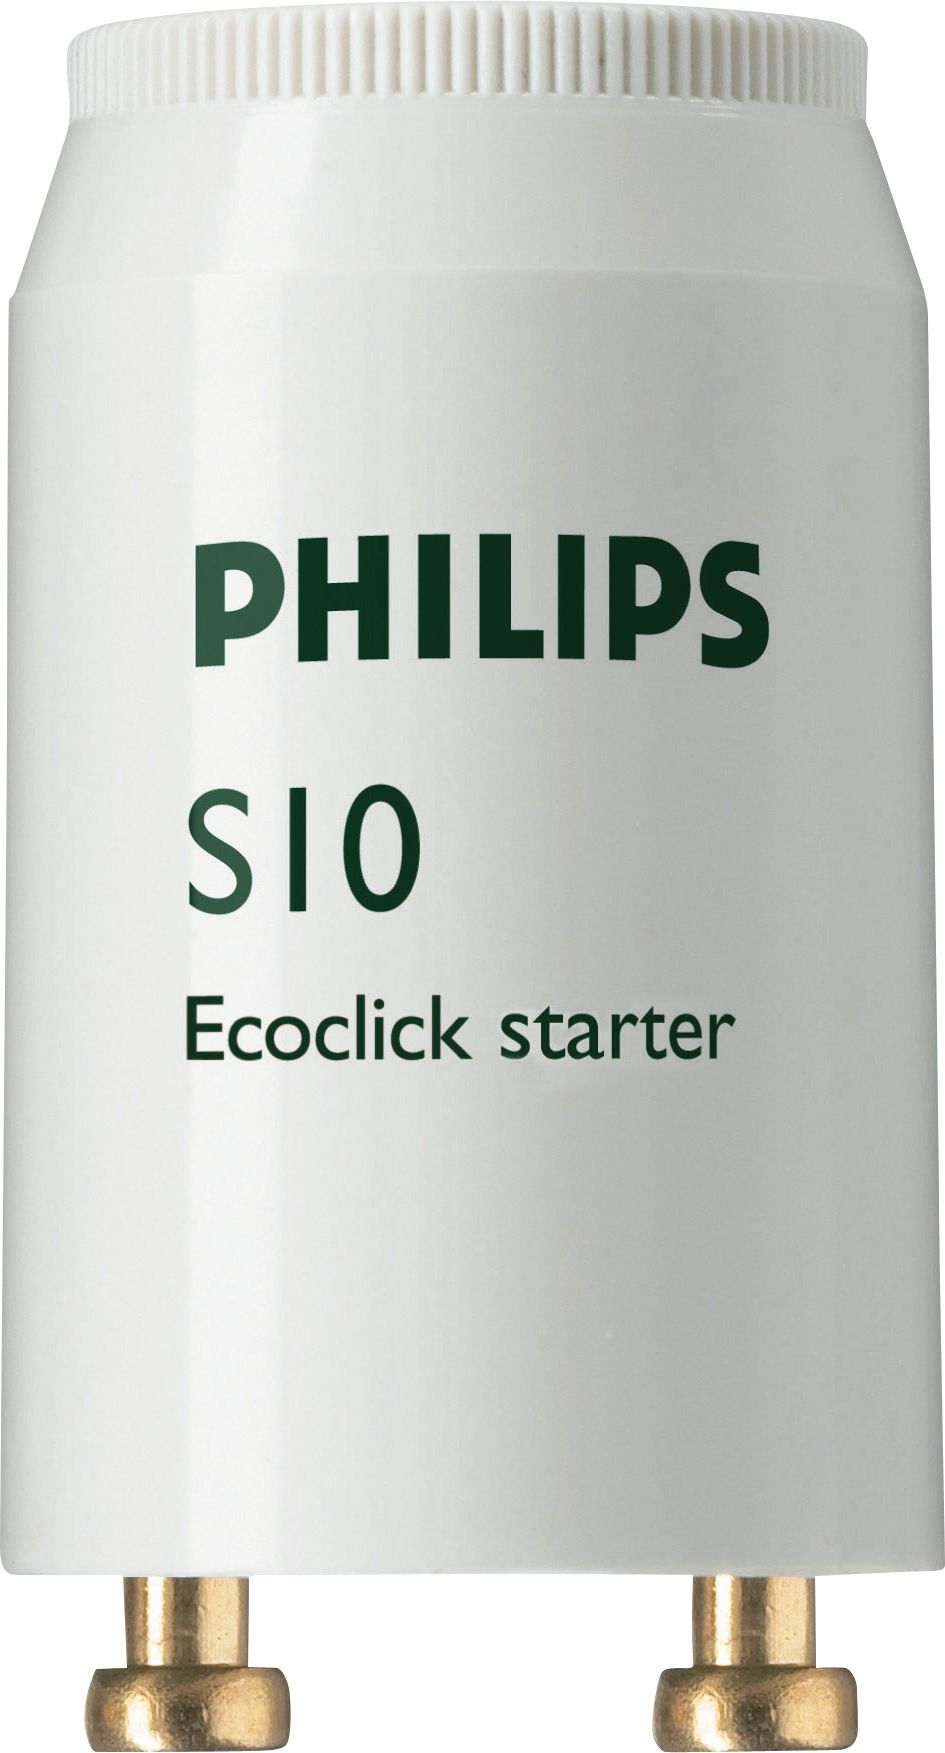 Philips 10 x S10 Ecoclick Starter for Fluorescent tube 4-65 Watt 